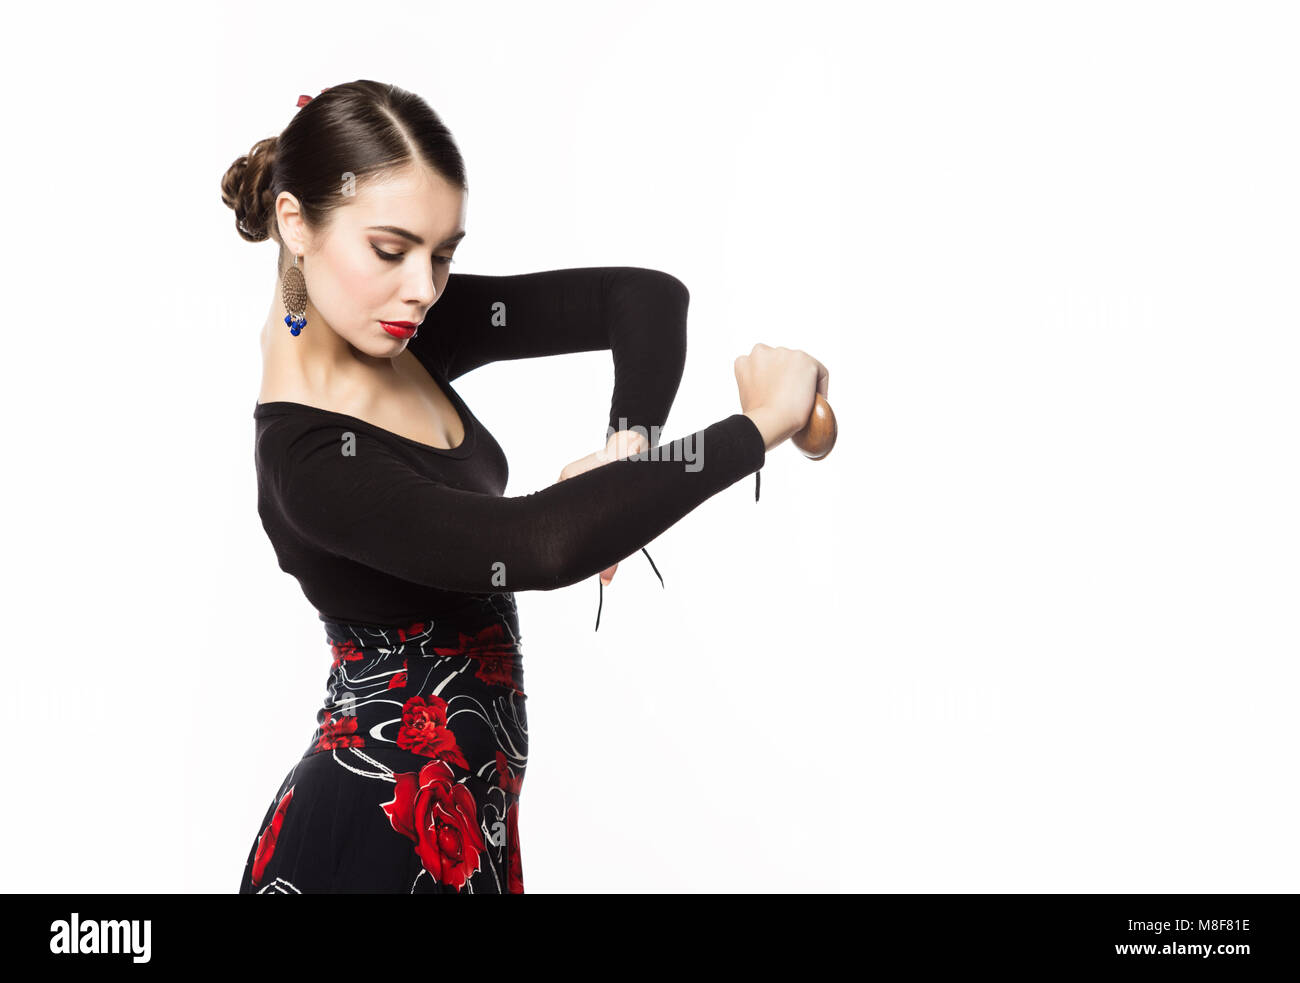 Danseuse de flamenco sur un fond clair. L'espace libre pour votre texte Banque D'Images